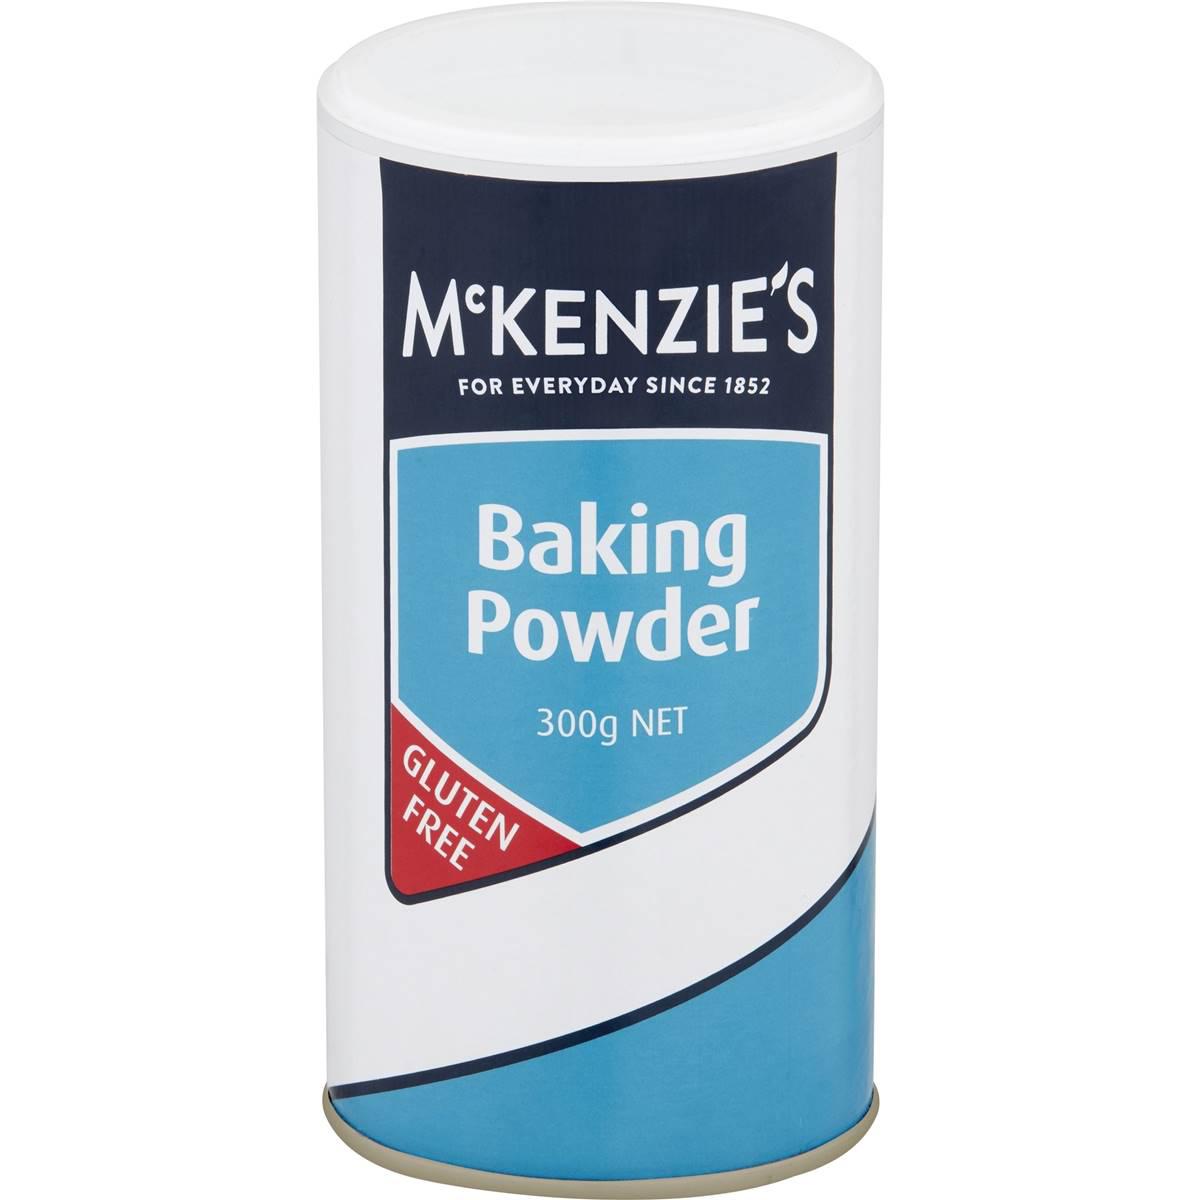 Mckenzie's Baking Powder 300g